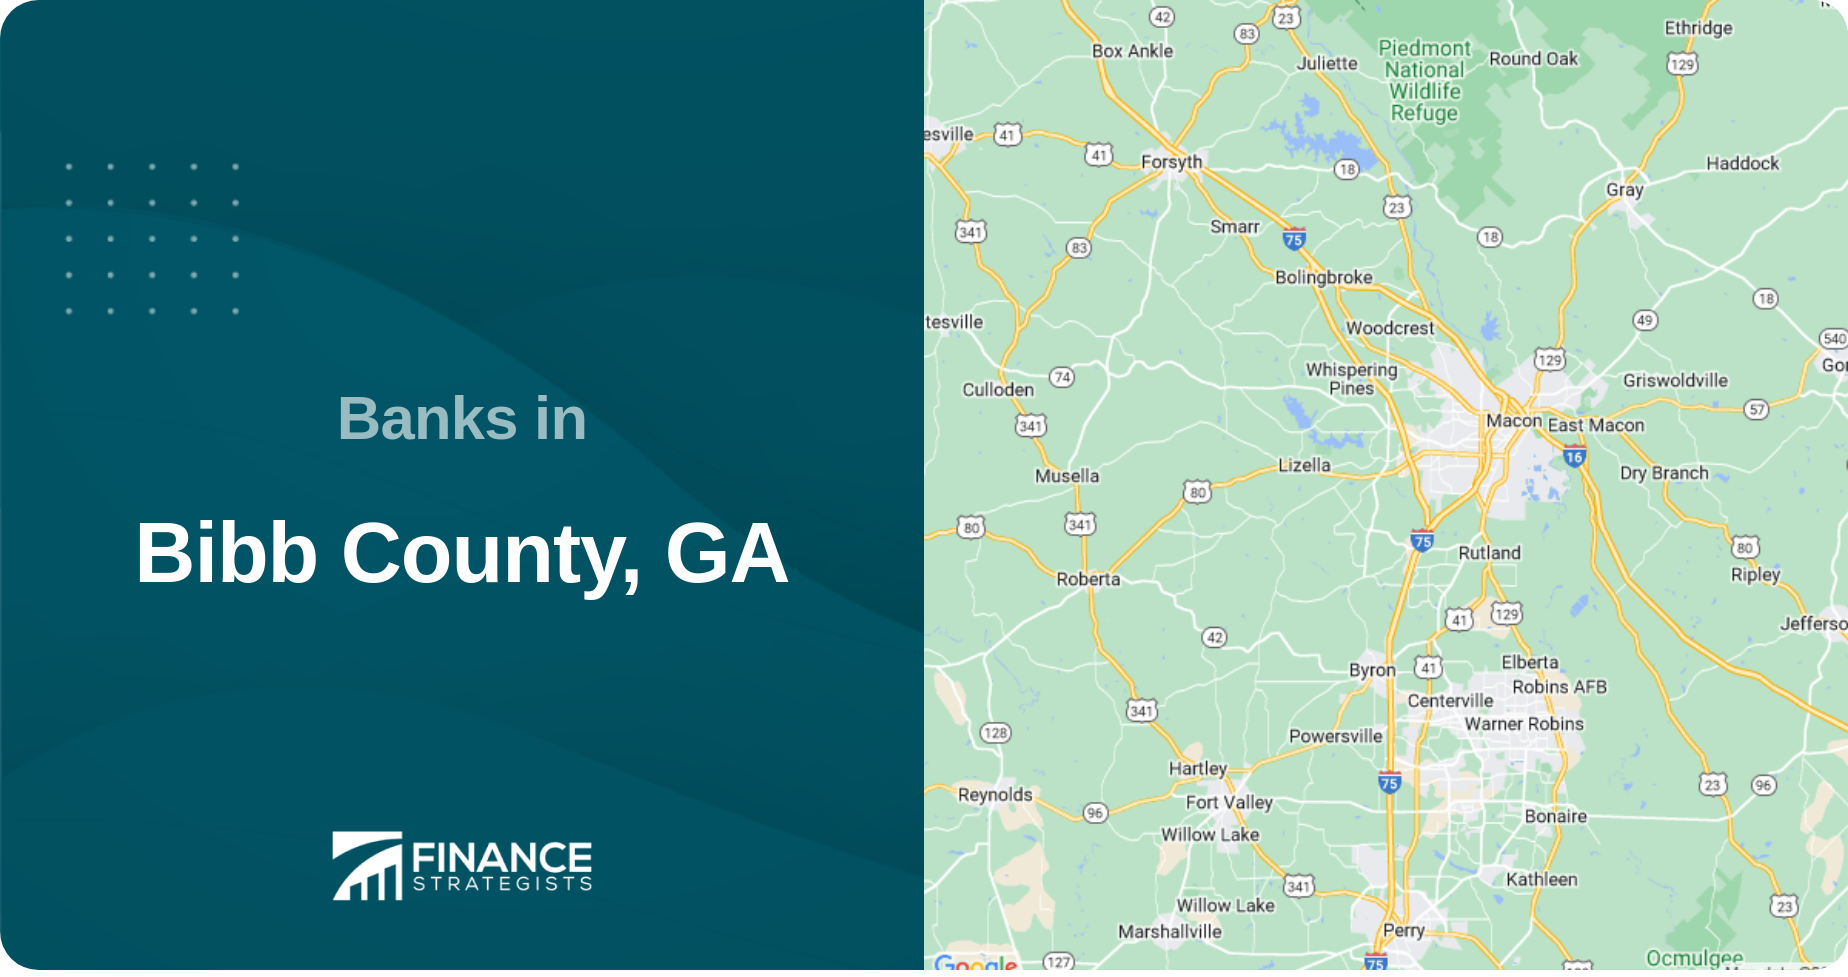 Banks in Bibb County, GA